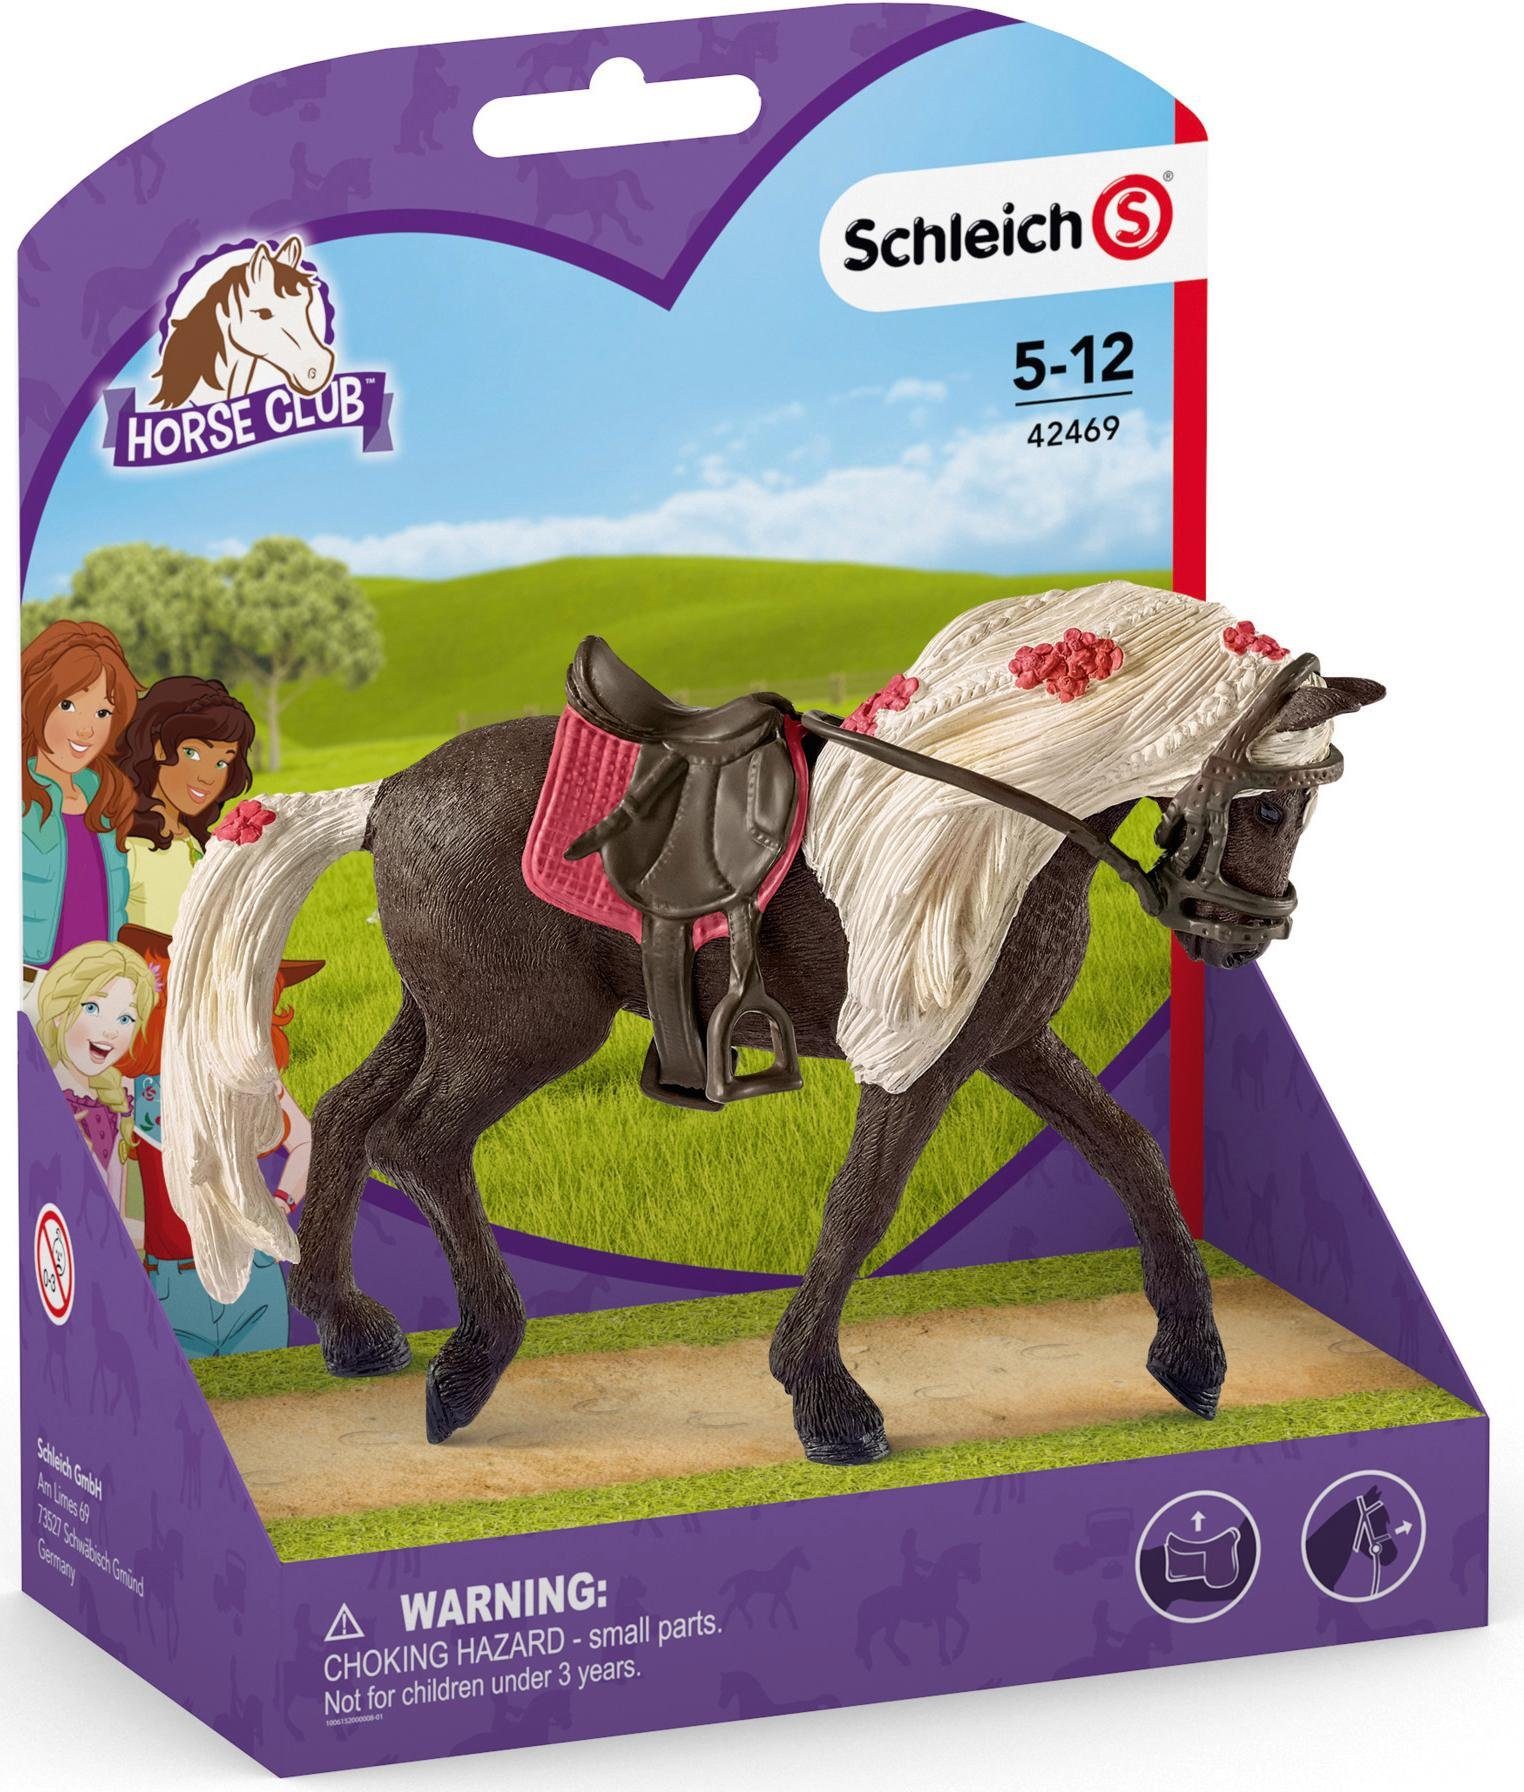 CLUB, Mountain Spielfigur Schleich® (42469) HORSE Pferdeshow Horse Rocky Stute